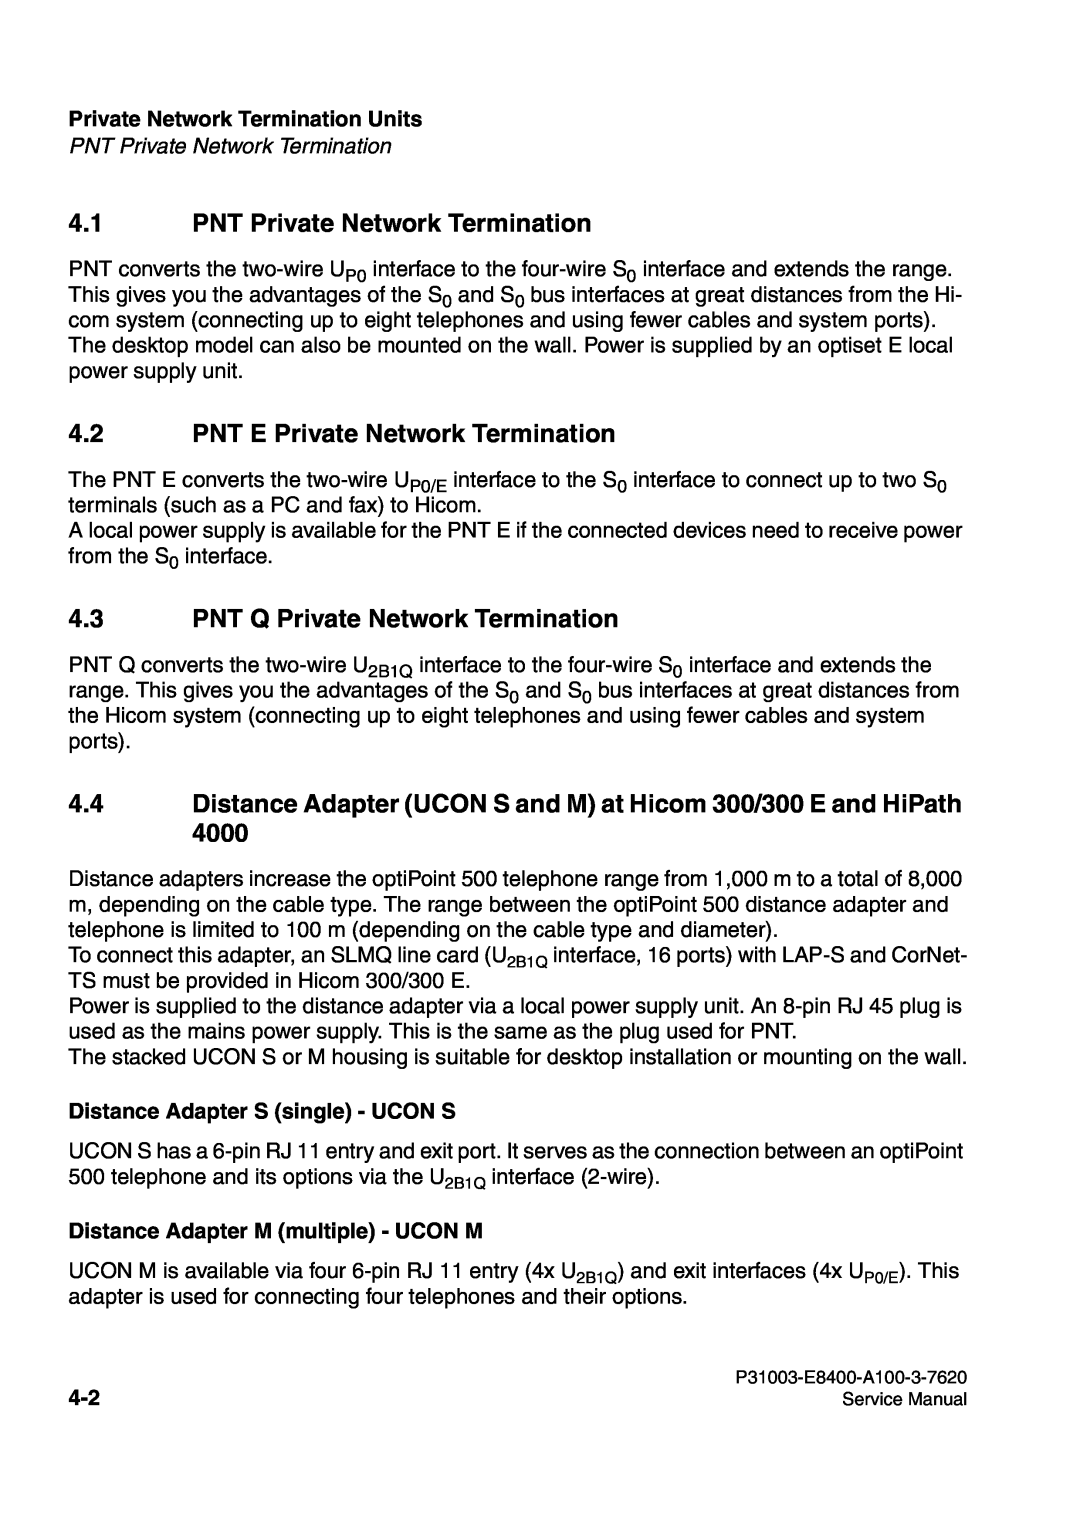 Siemens 500 PNT Private Network Termination, PNT E Private Network Termination, PNT Q Private Network Termination 